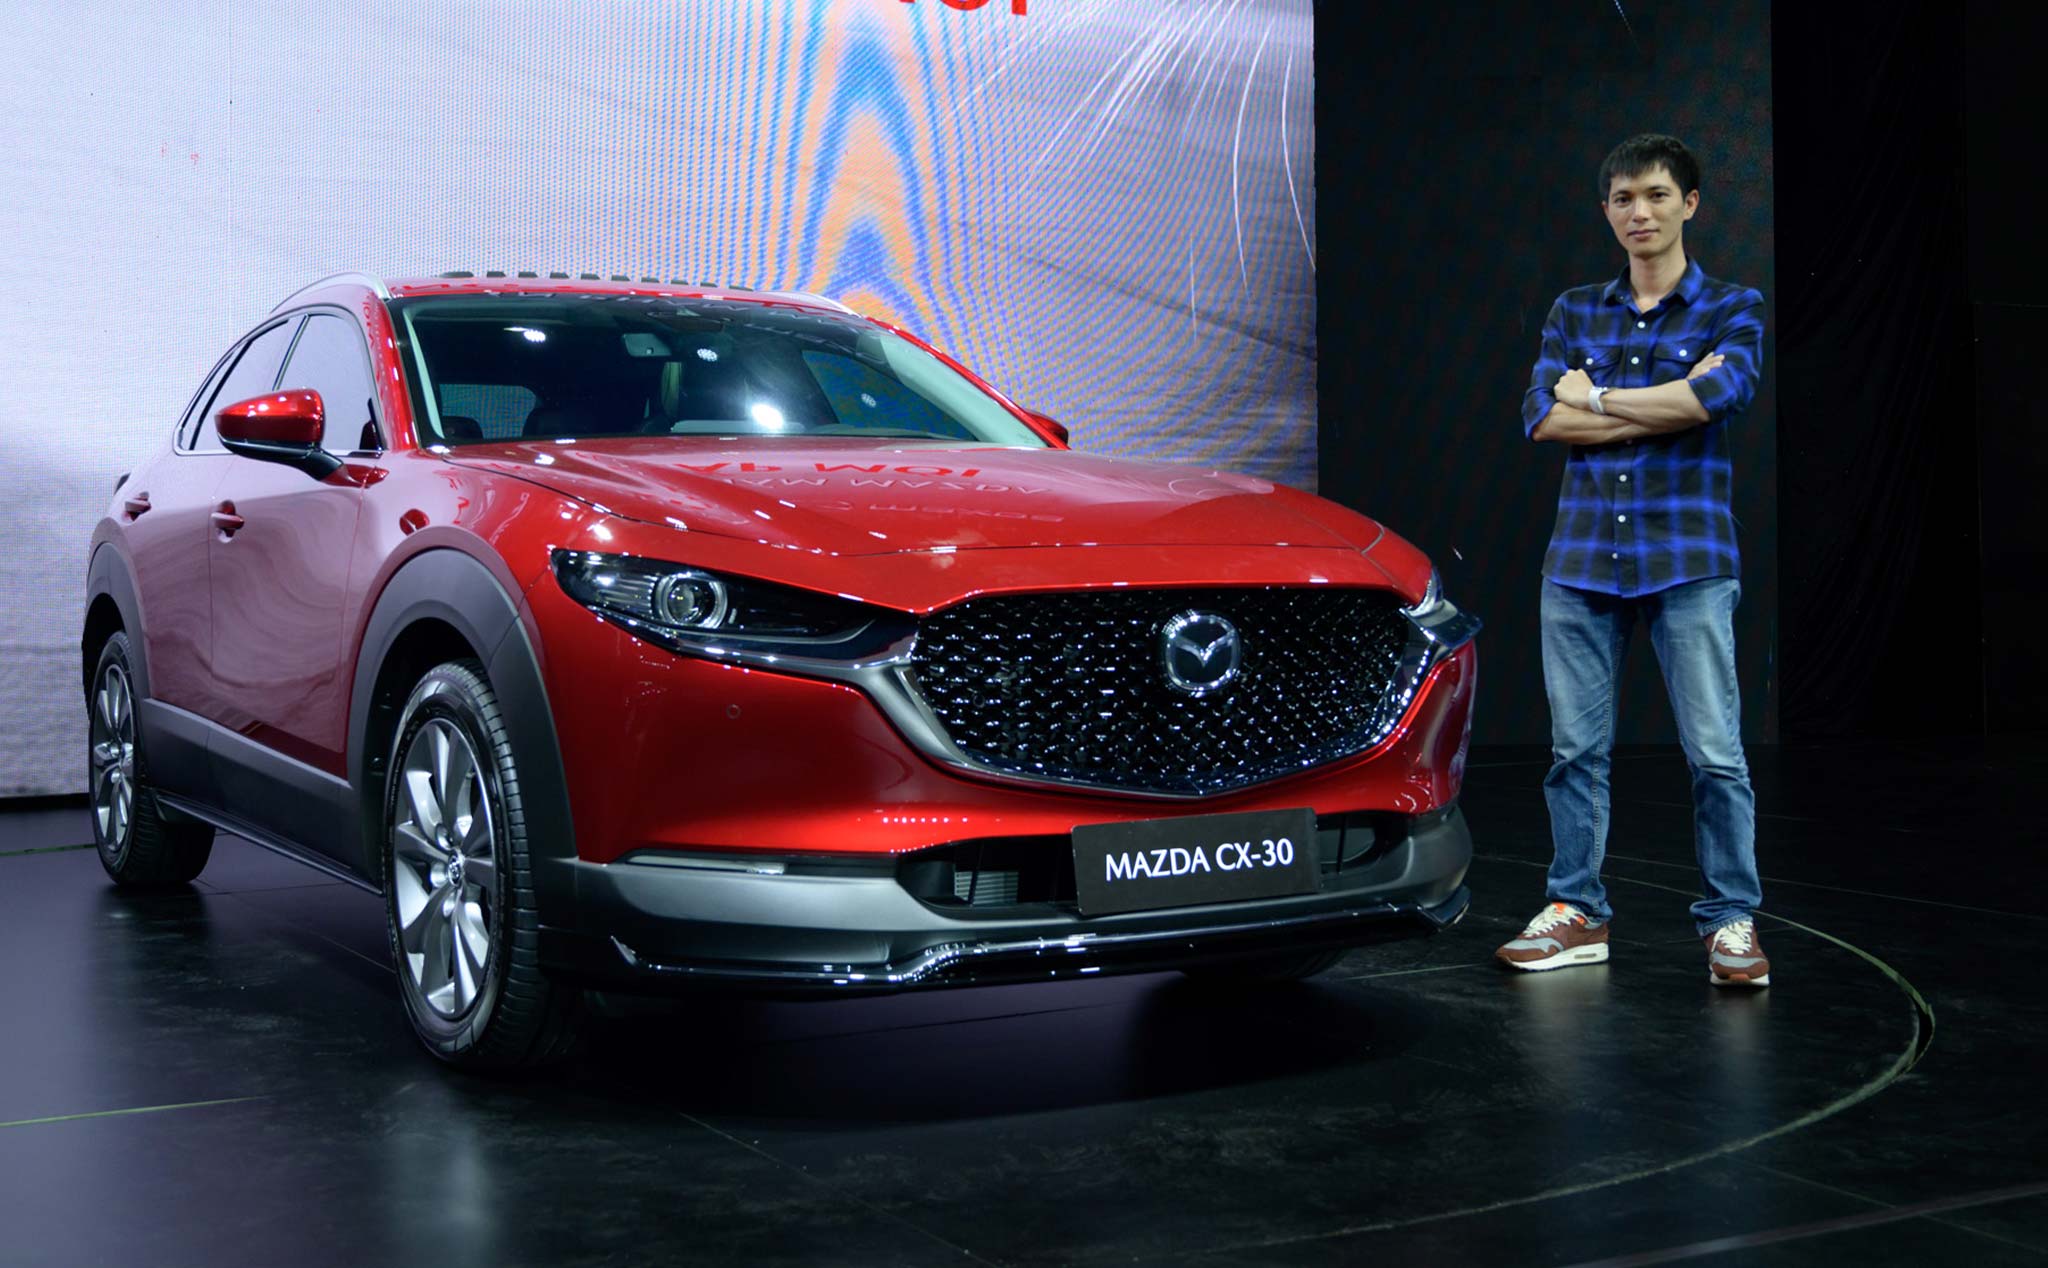 Chi tiết Mazda CX-30 Premium, trẻ trung và hiện đại liệu có đủ thuyết phục?